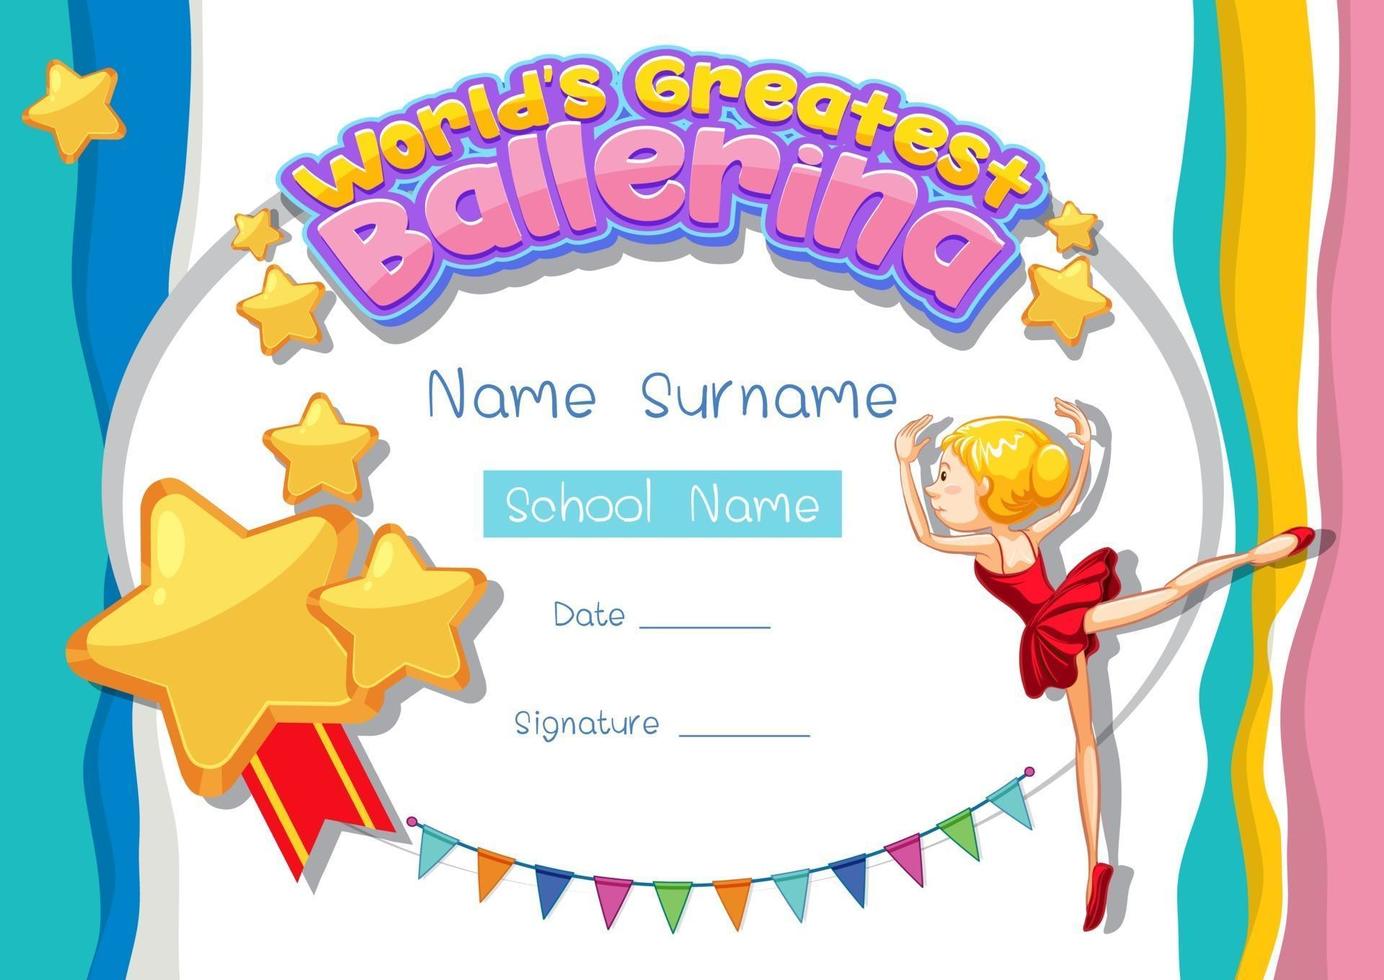 Zertifikatvorlage für die größte Ballerina der Welt vektor